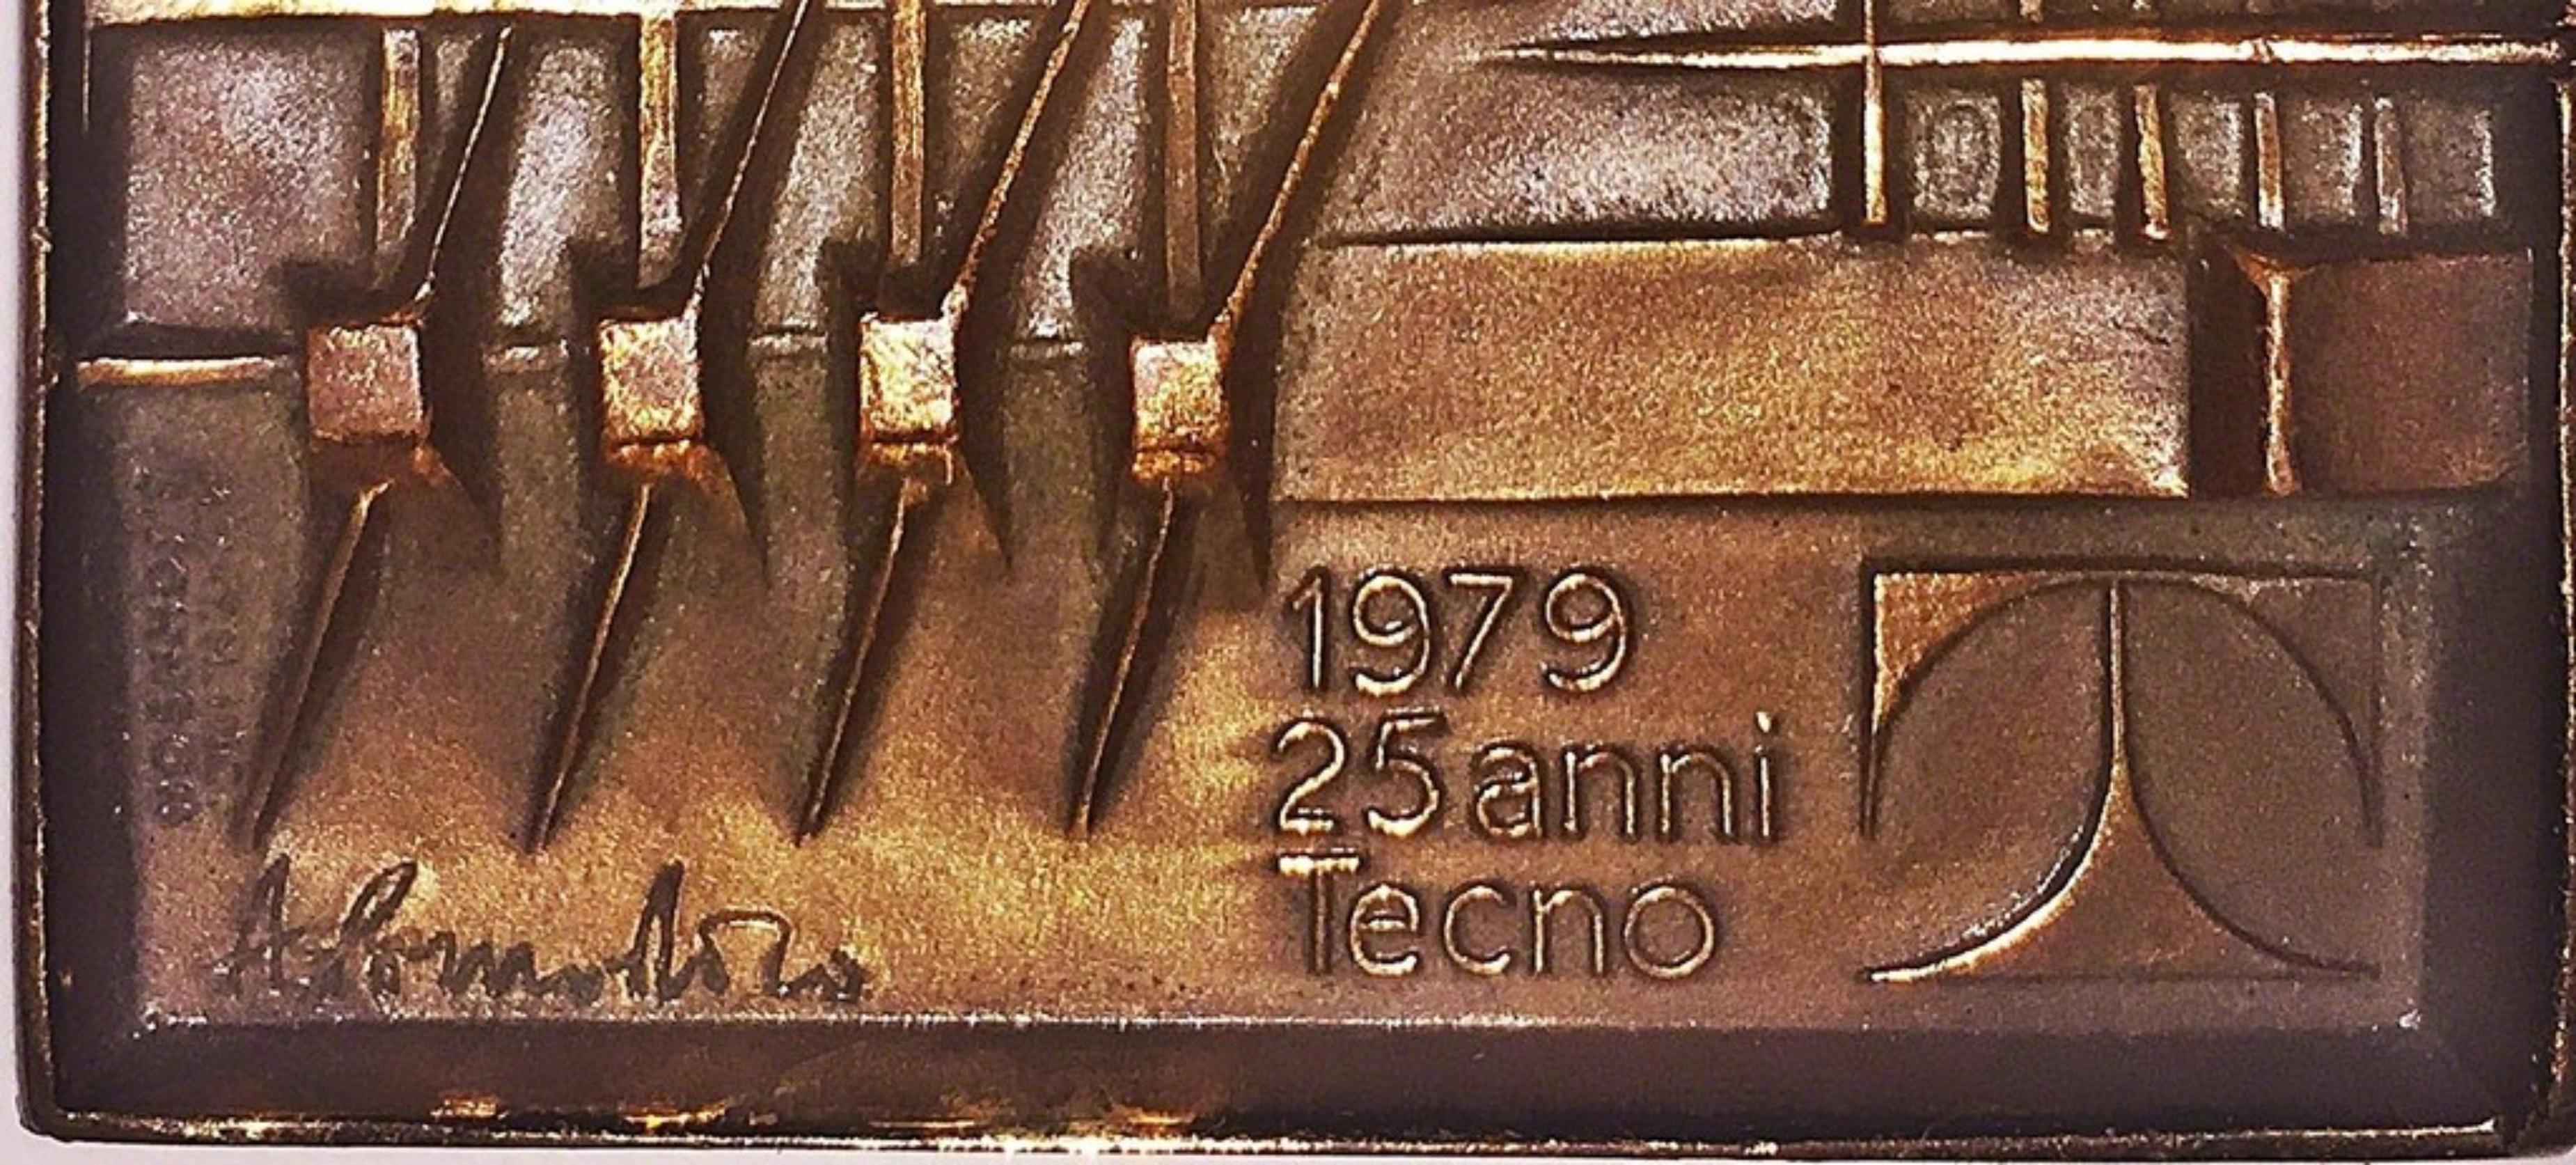 Medaglia 25 Anni Tecno, Bronze-Medaillonplakette in limitierter Auflage, berühmter Bildhauer (Geometrische Abstraktion), Sculpture, von Arnaldo Pomodoro